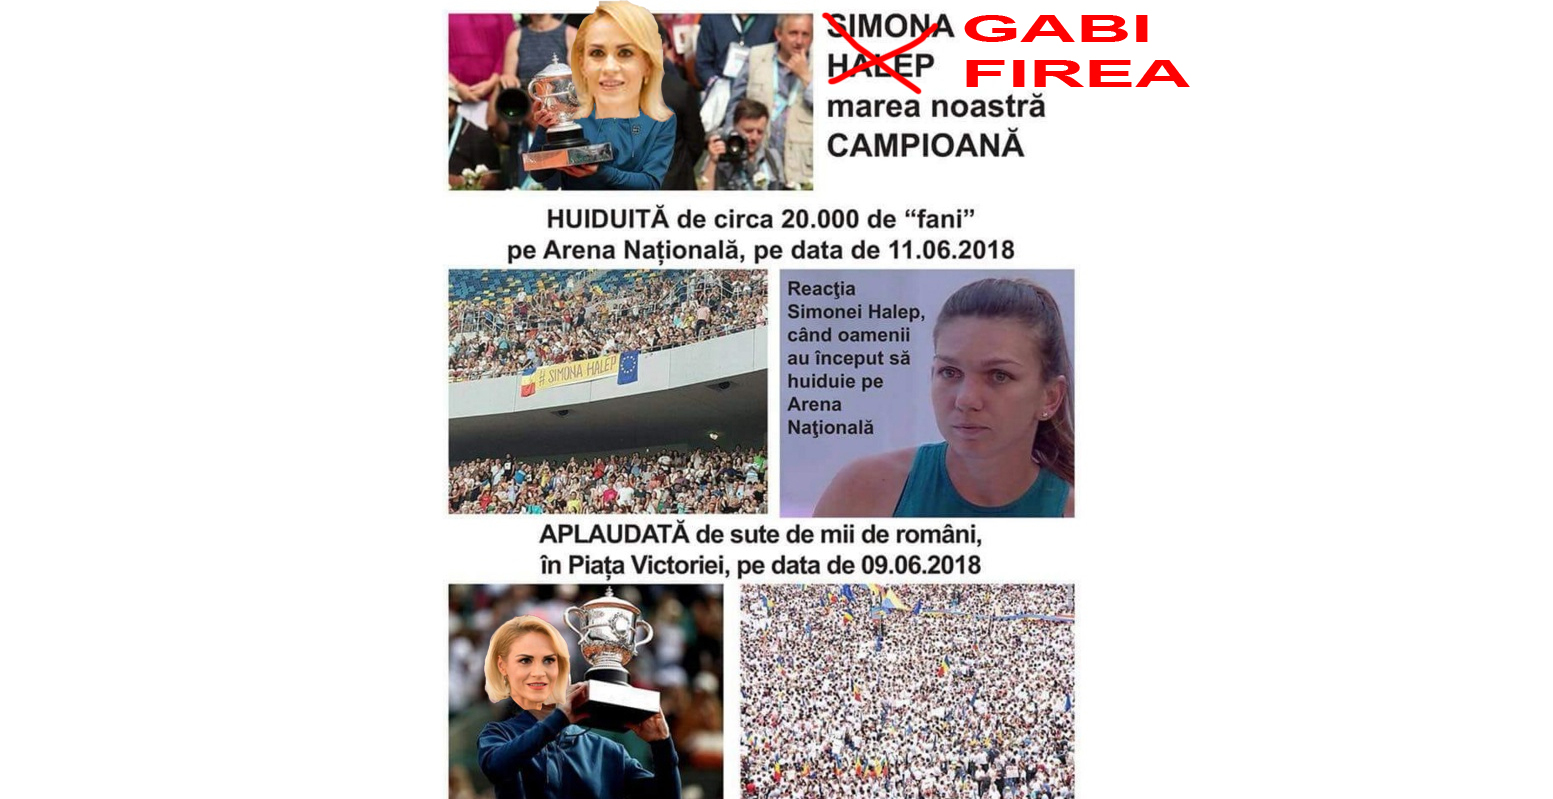 PSD Caracal: "Gabi Firea, câștigtoarea Roland Garros, huduită de Simona Halep pe Arena Națională!"